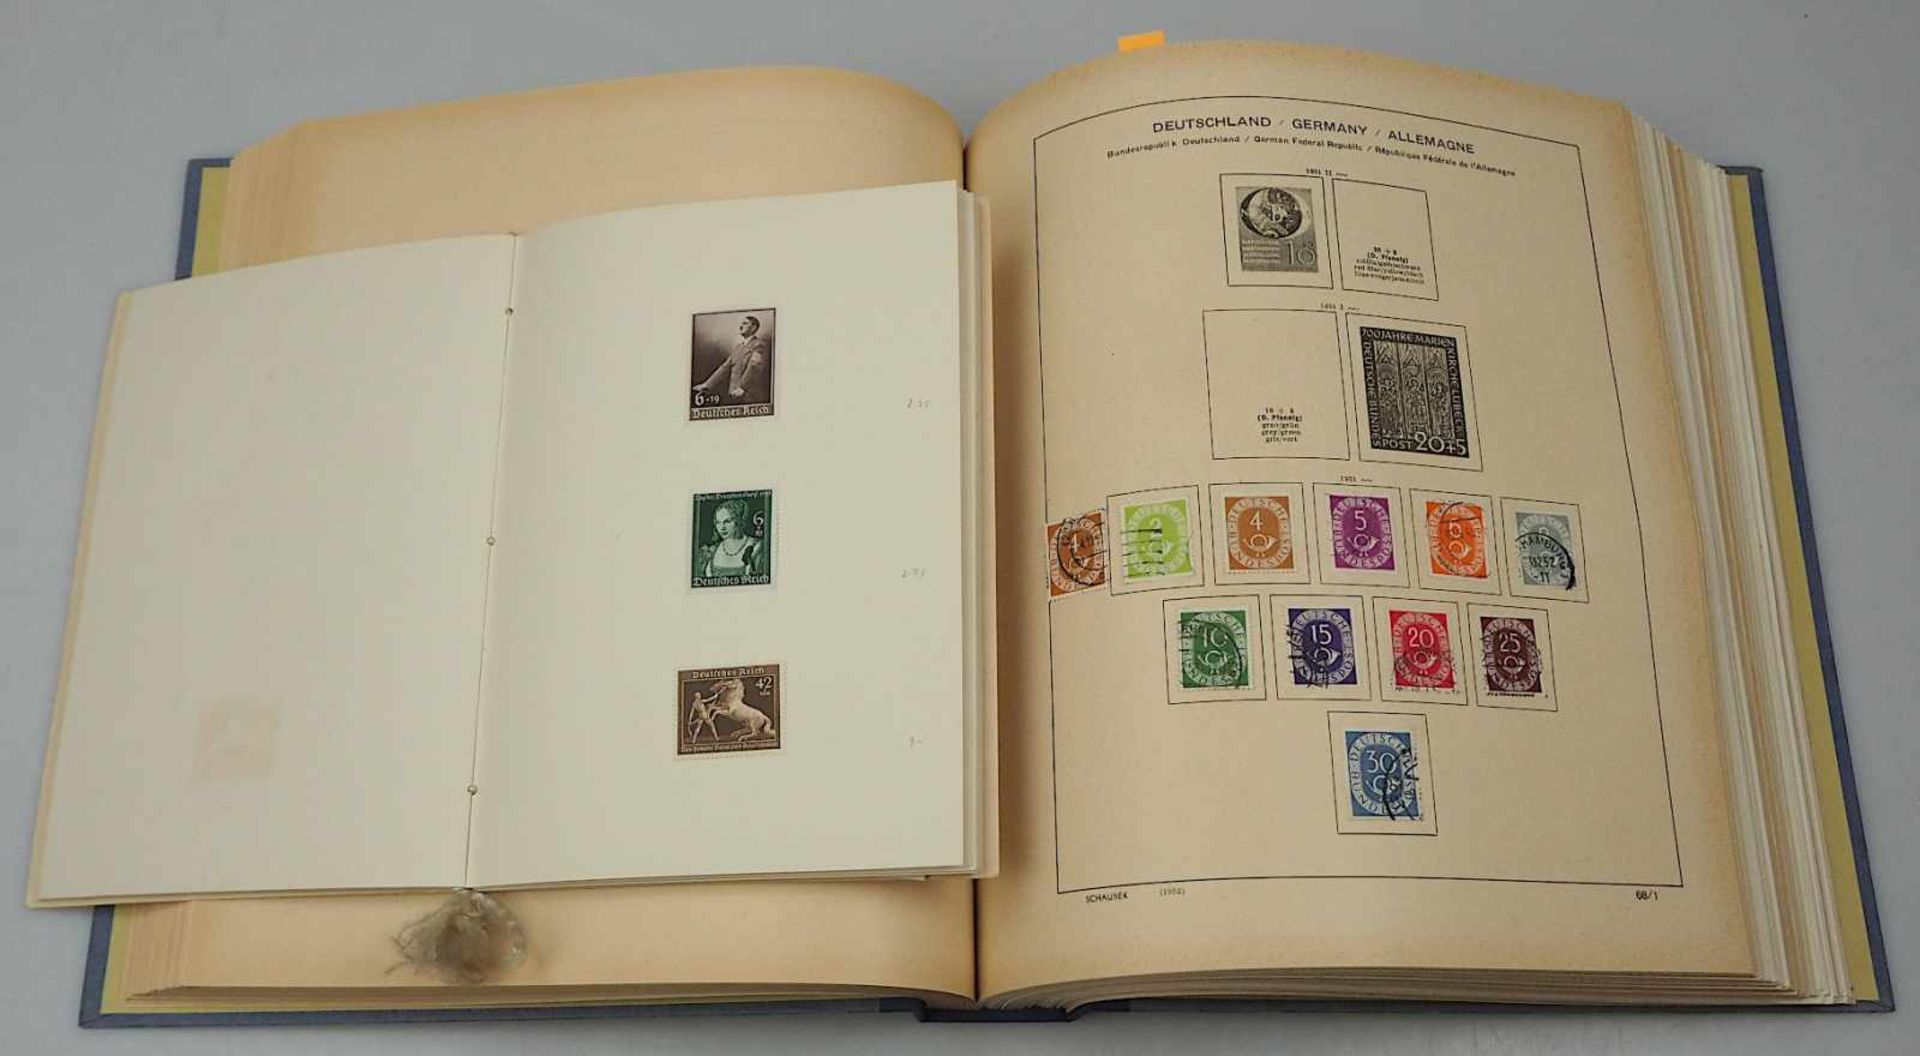 1 Konv. Briefmarken Deutsches Reich, III. Reich, BRD, Berlin u.a.